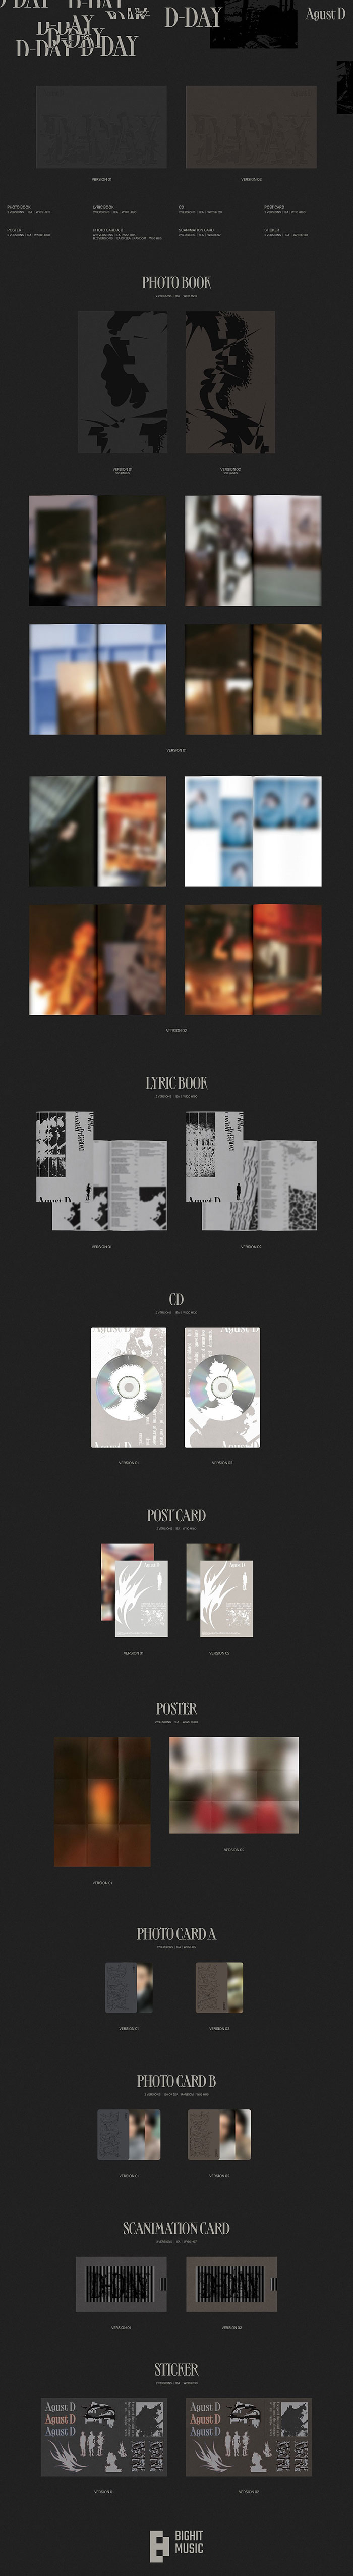 Agust D (SUGA / BTS) 初のソロアルバム『D-DAY』をリリース|K-POP・アジア